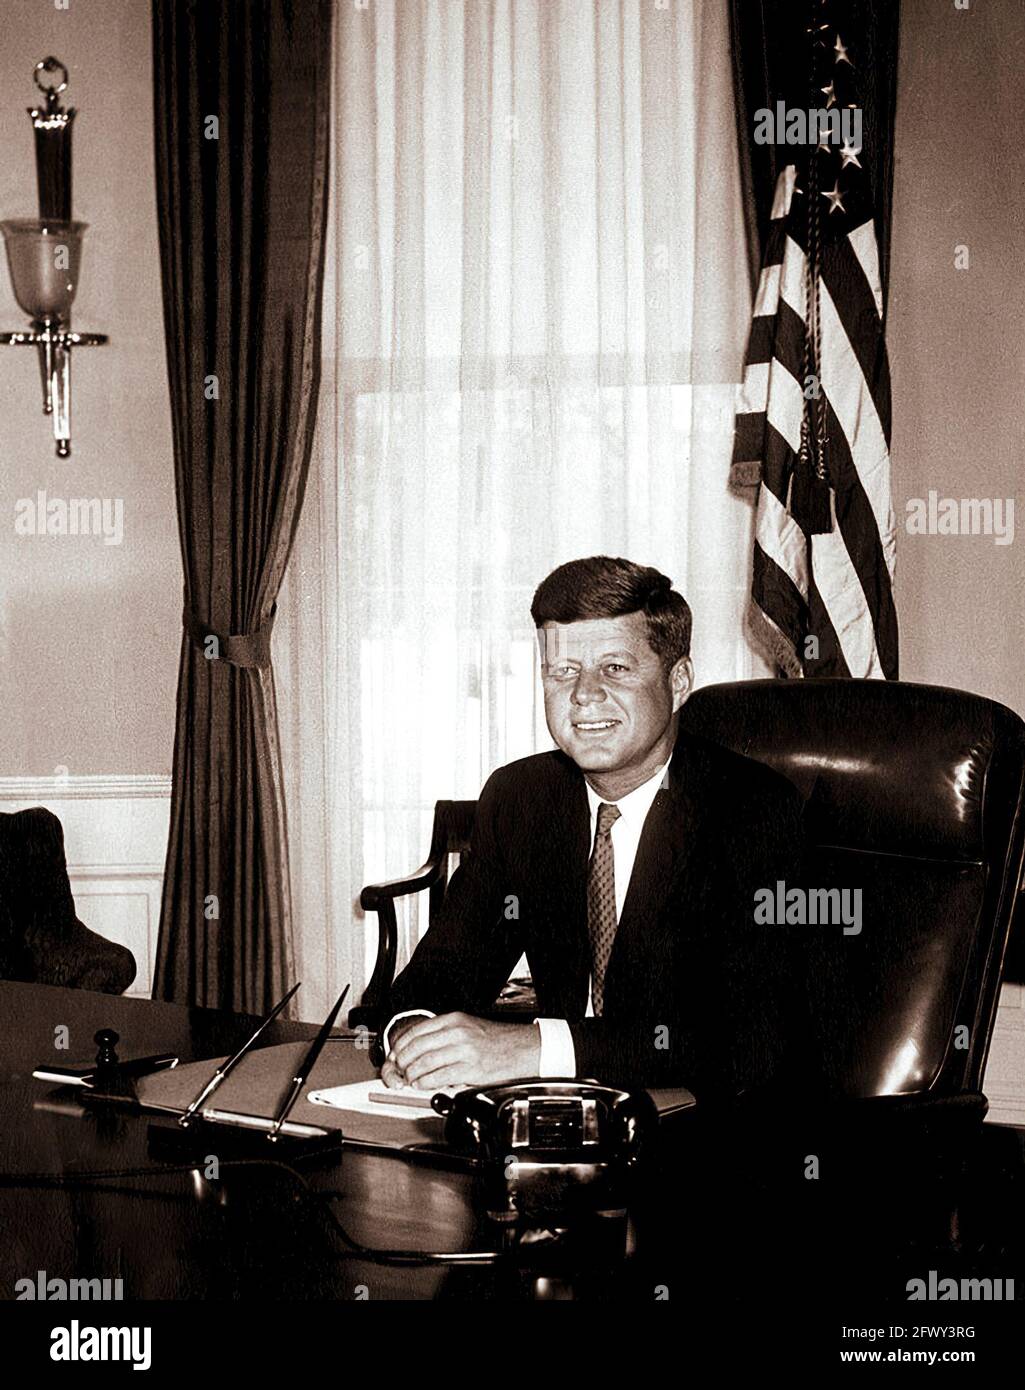 Photo portrait du Président John F. Kennedy à son bureau dans le Bureau ovale de la Maison Blanche, Washington, D.C. il s'agit de la première photo de la Maison Blanche faite du Président à son bureau. Banque D'Images